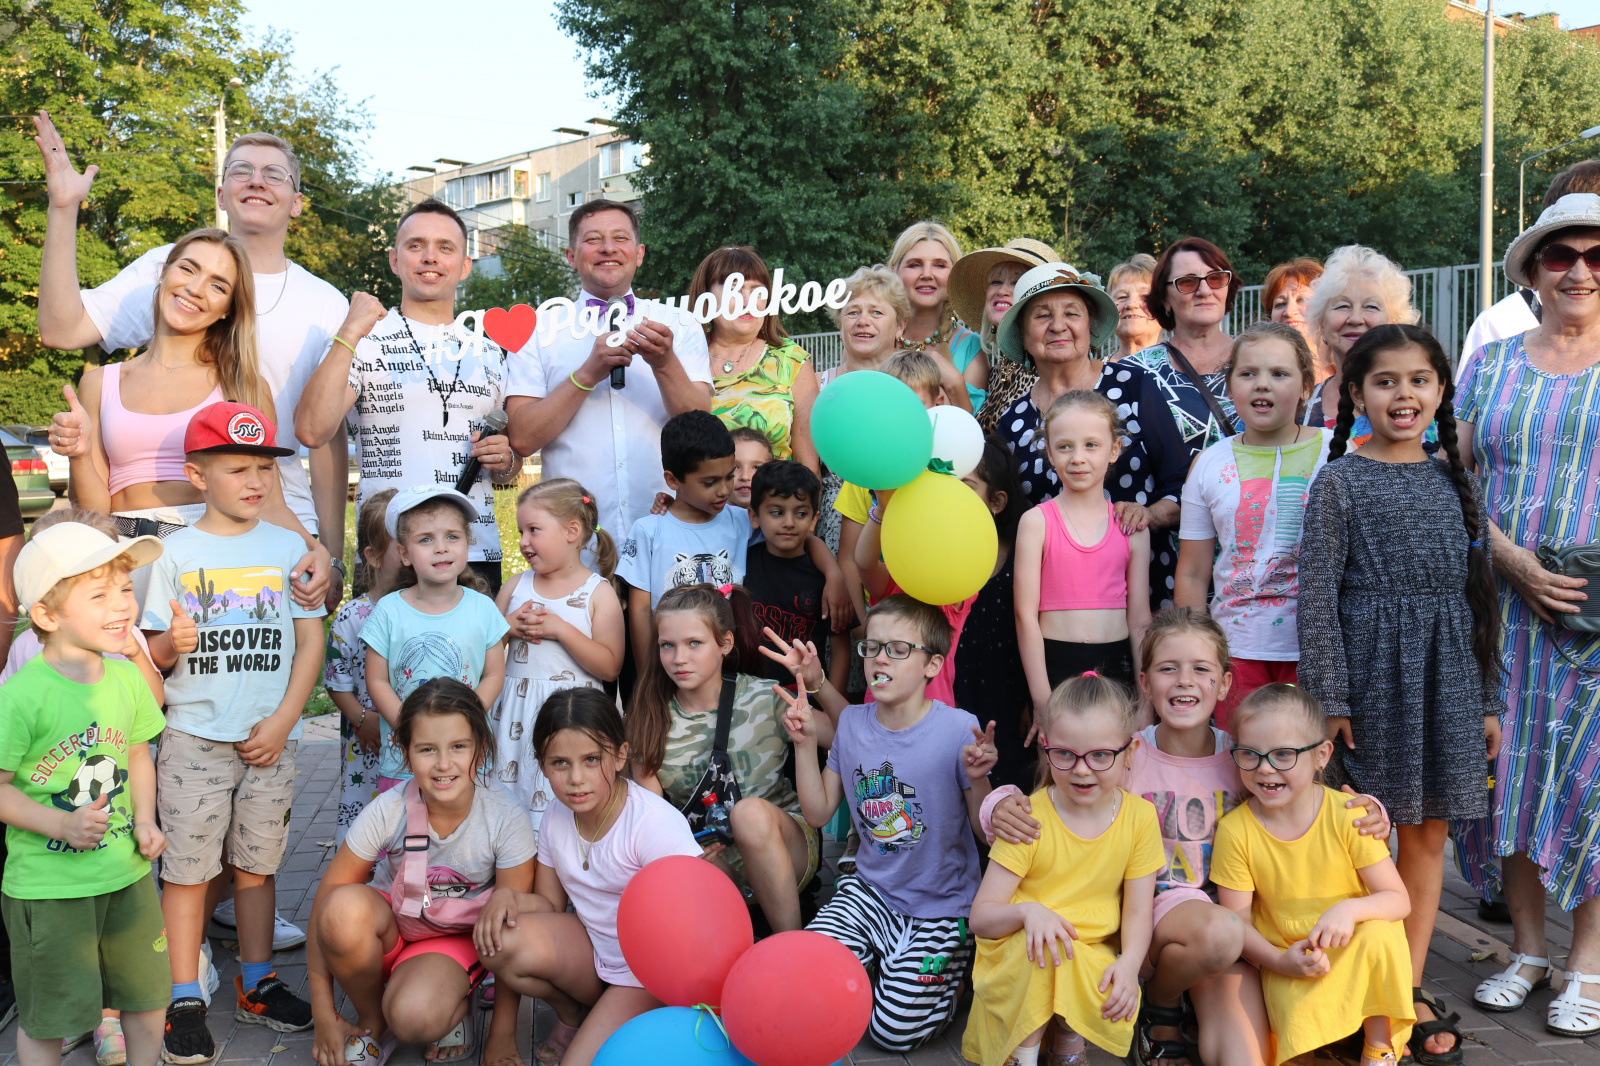 Летние вечера в Рязановском: уличные интерактивные праздники продолжаются